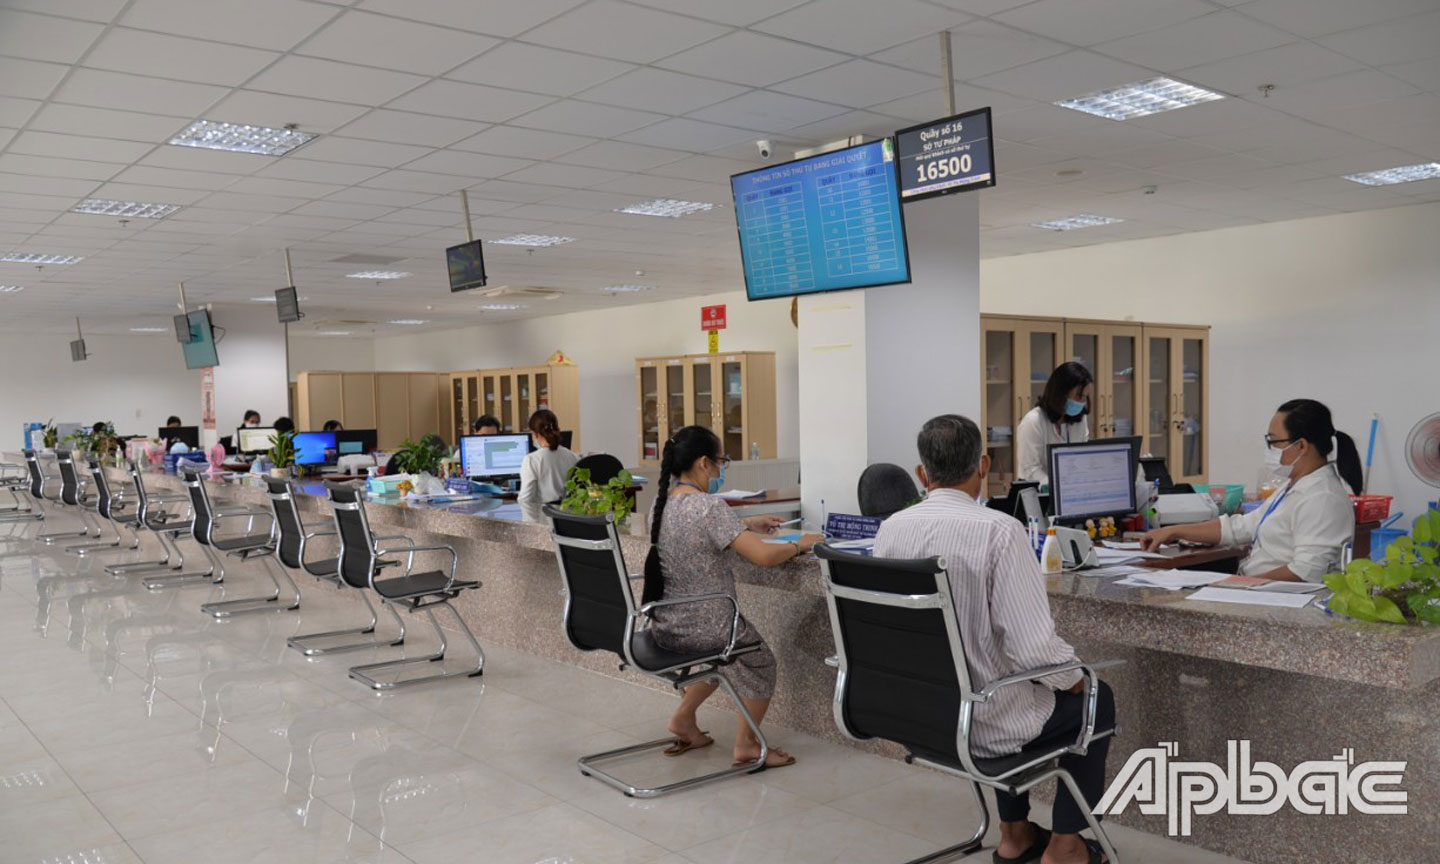  Tiền Giang đẩy mạnh cải cách hành chính để phục vụ người dân và doanh nghiệp (ảnh chụp tại Trung tâm Phục vụ hành chính công tỉnh).